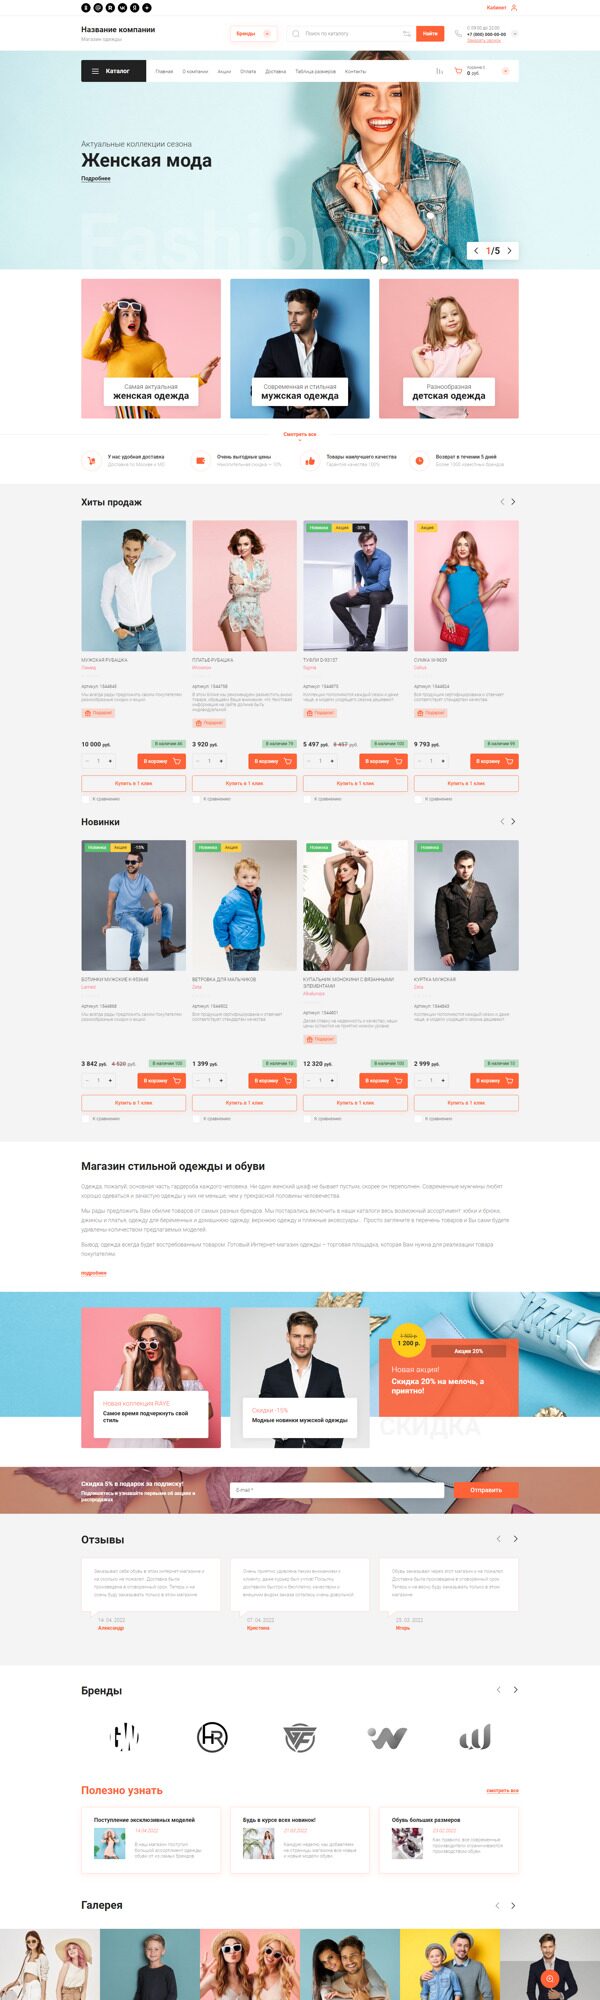 Интернет магазин одежды онлайн в Украине.